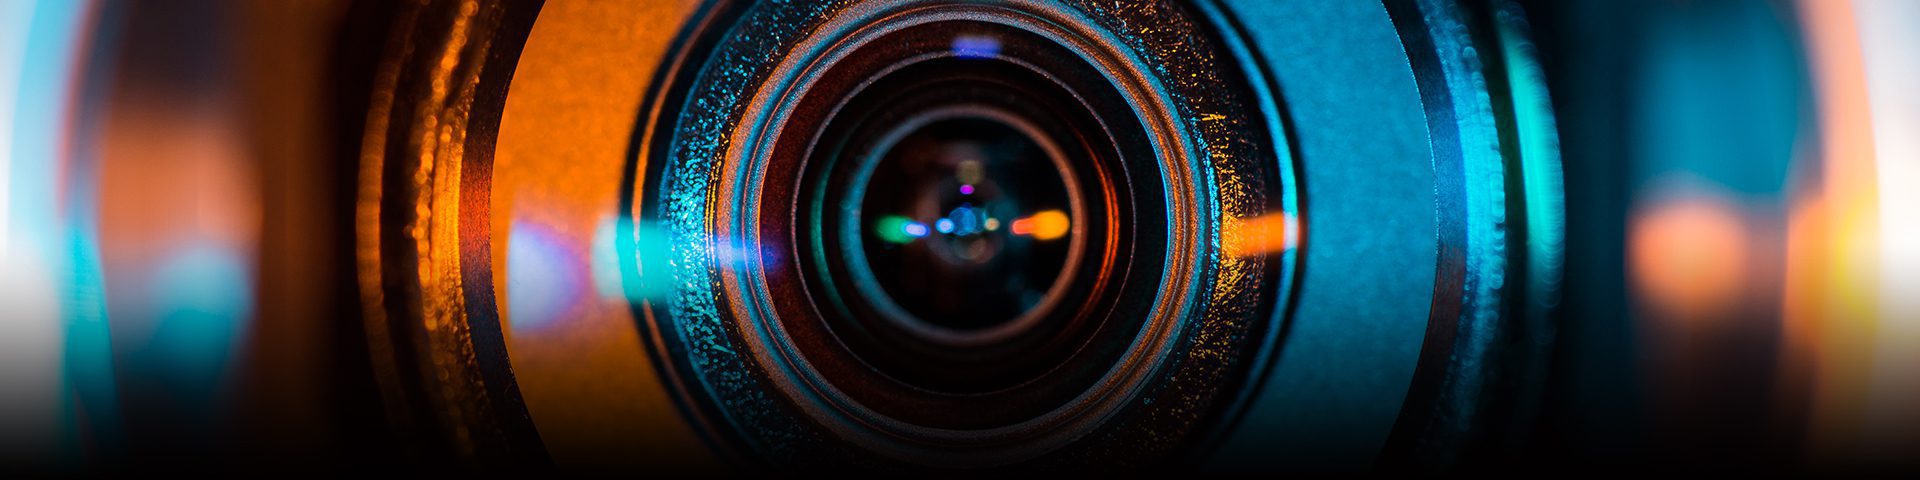 Camera Lens Close-up